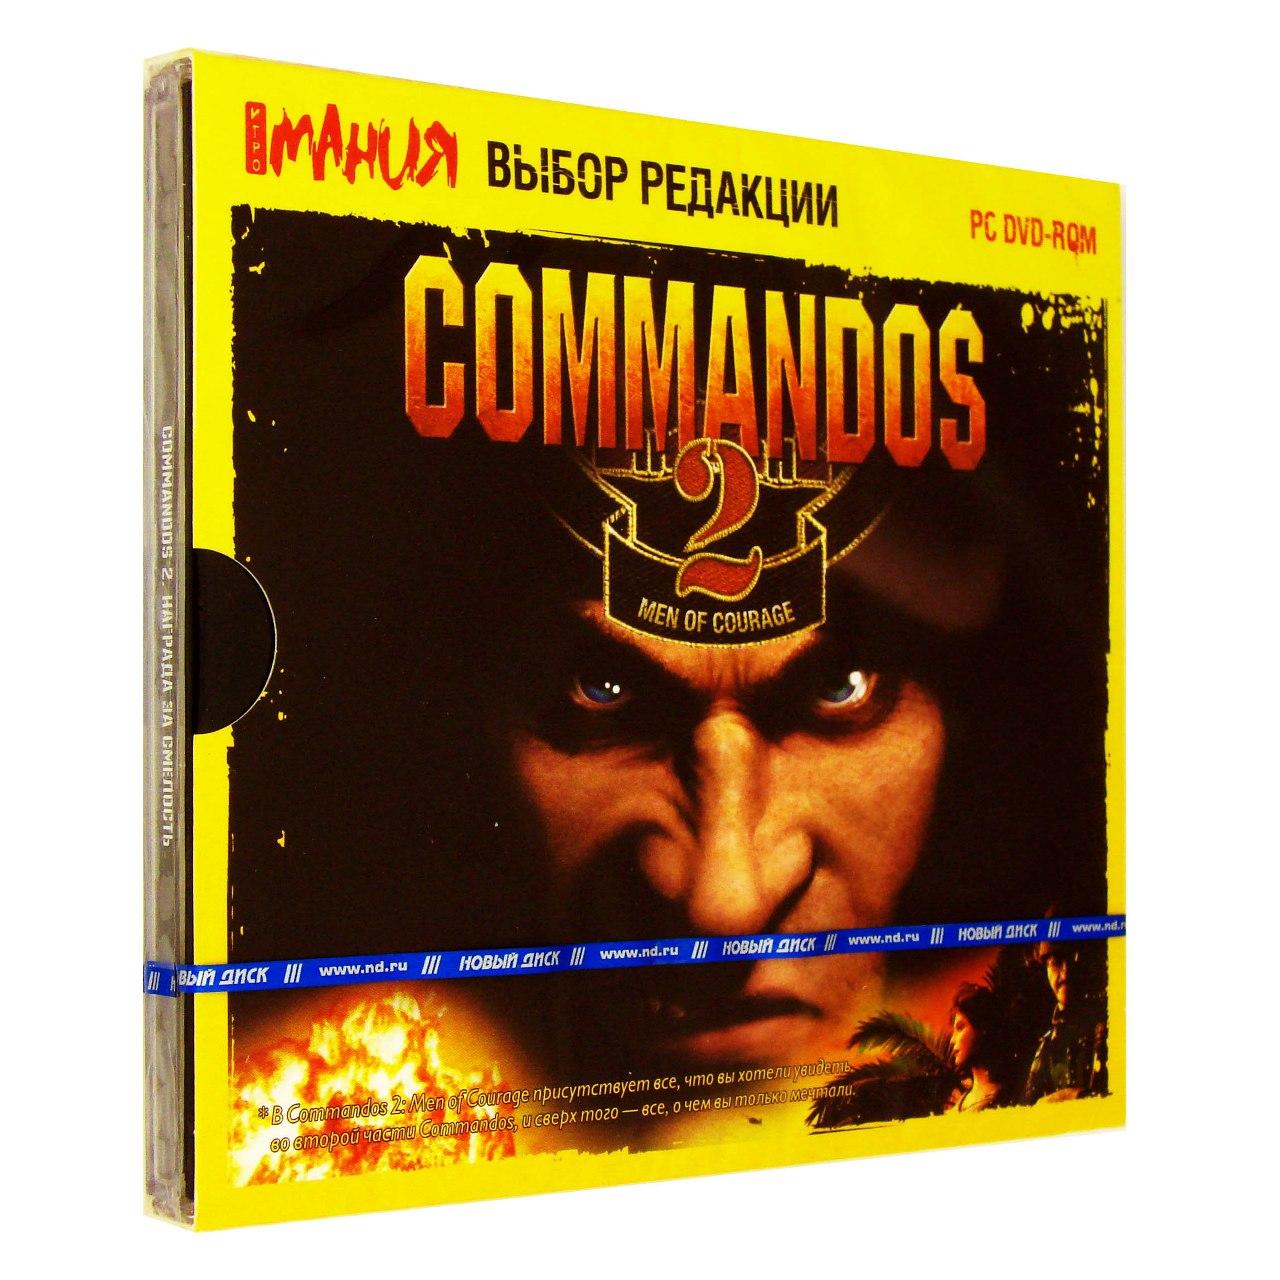 Компьютерный компакт-диск Commandos 2: Награда за смелость (ПК), фирма "Новый диск", 1DVD